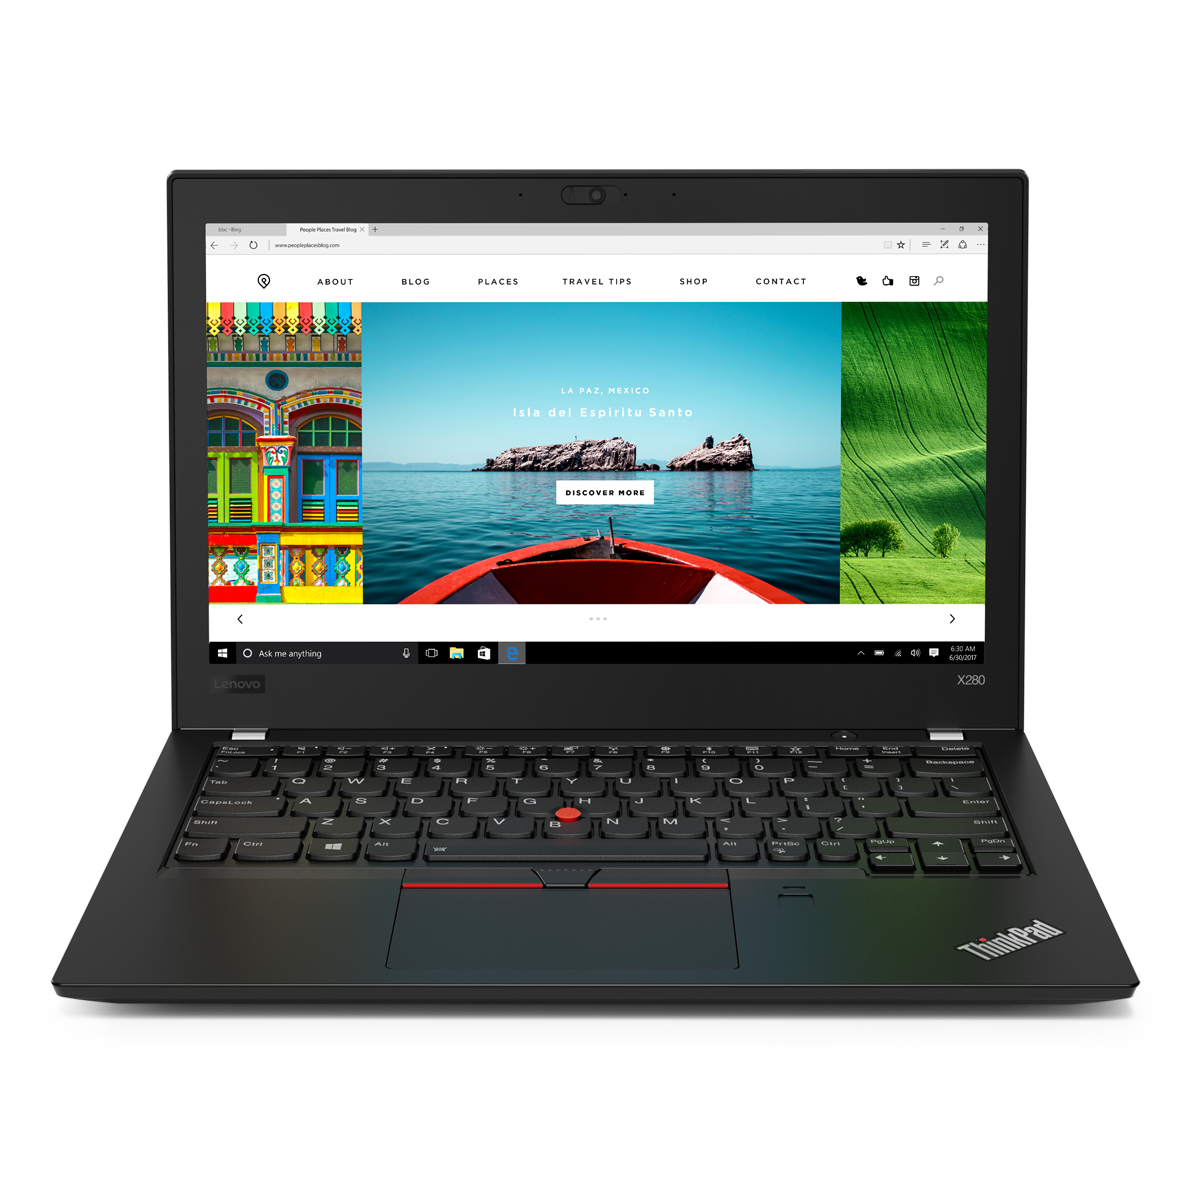 Lenovo Thinkpad X280 Клас А| Лаптопи втора ръка | iZone